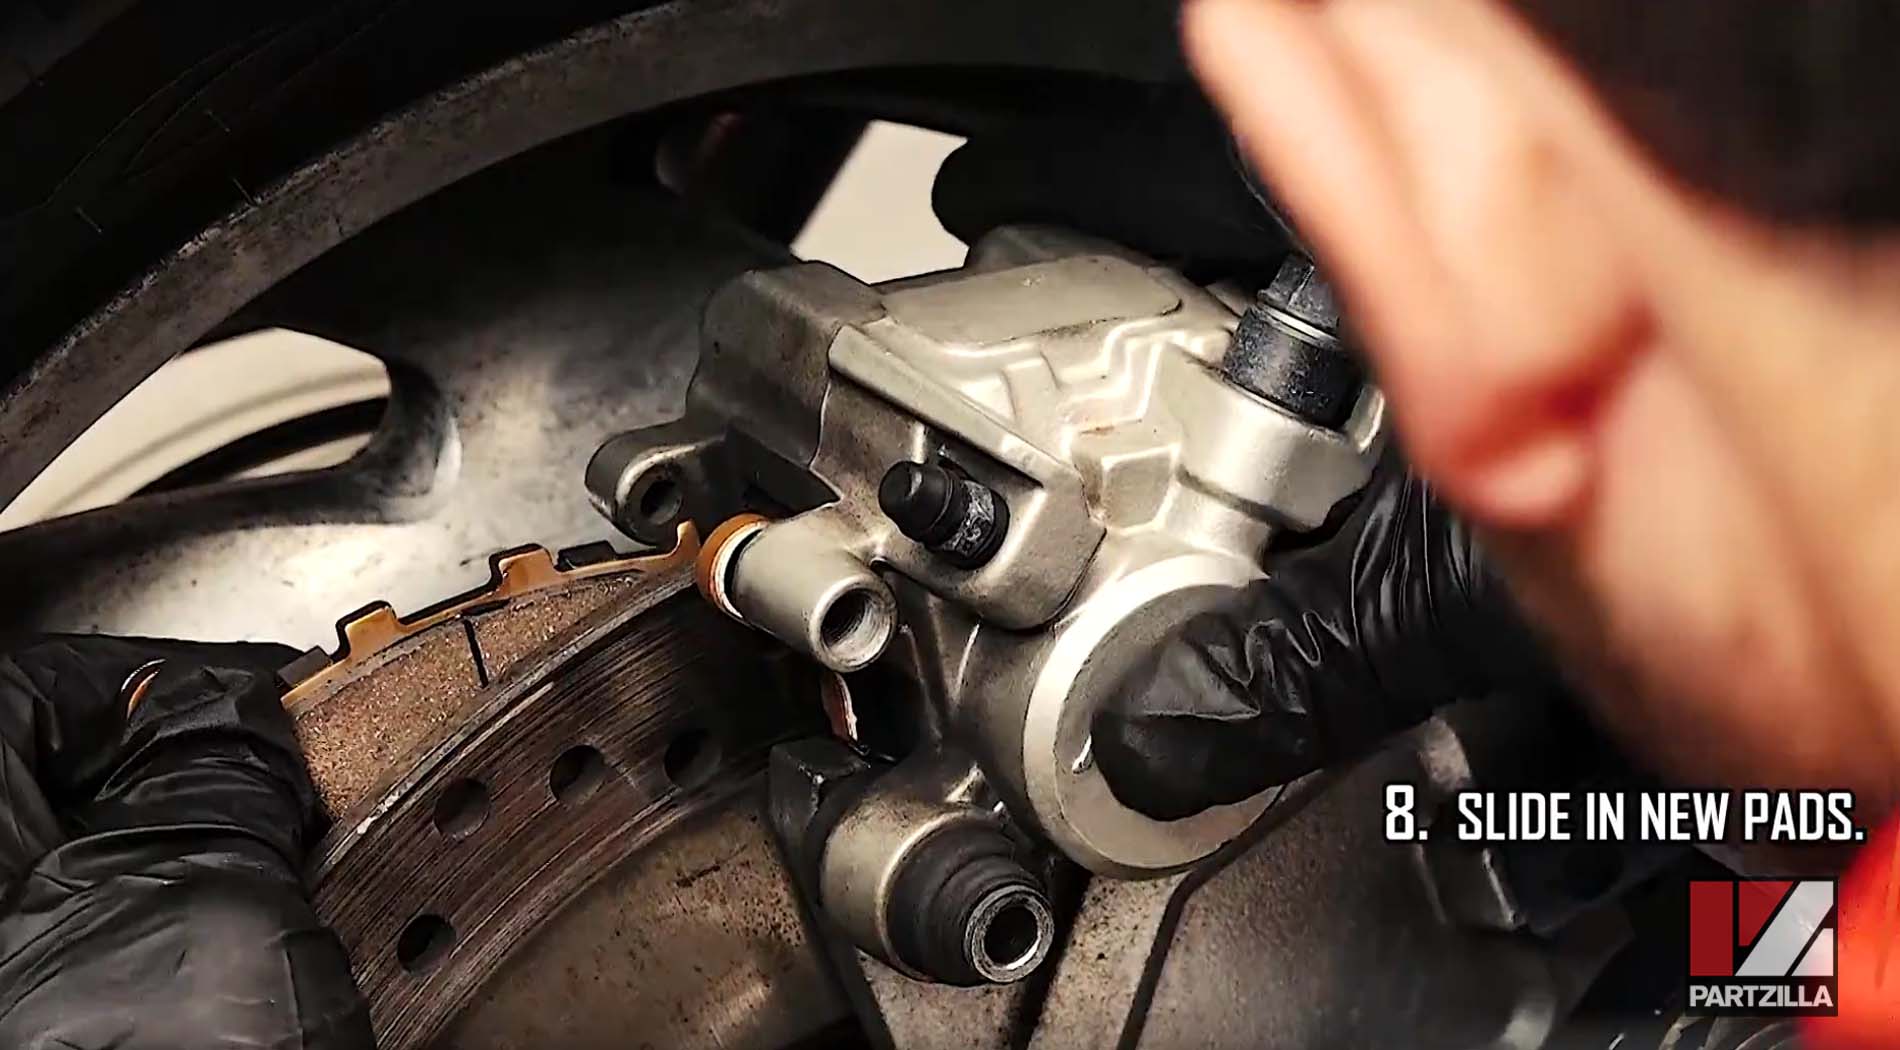 Honda VTX 1300 rear brake pads install